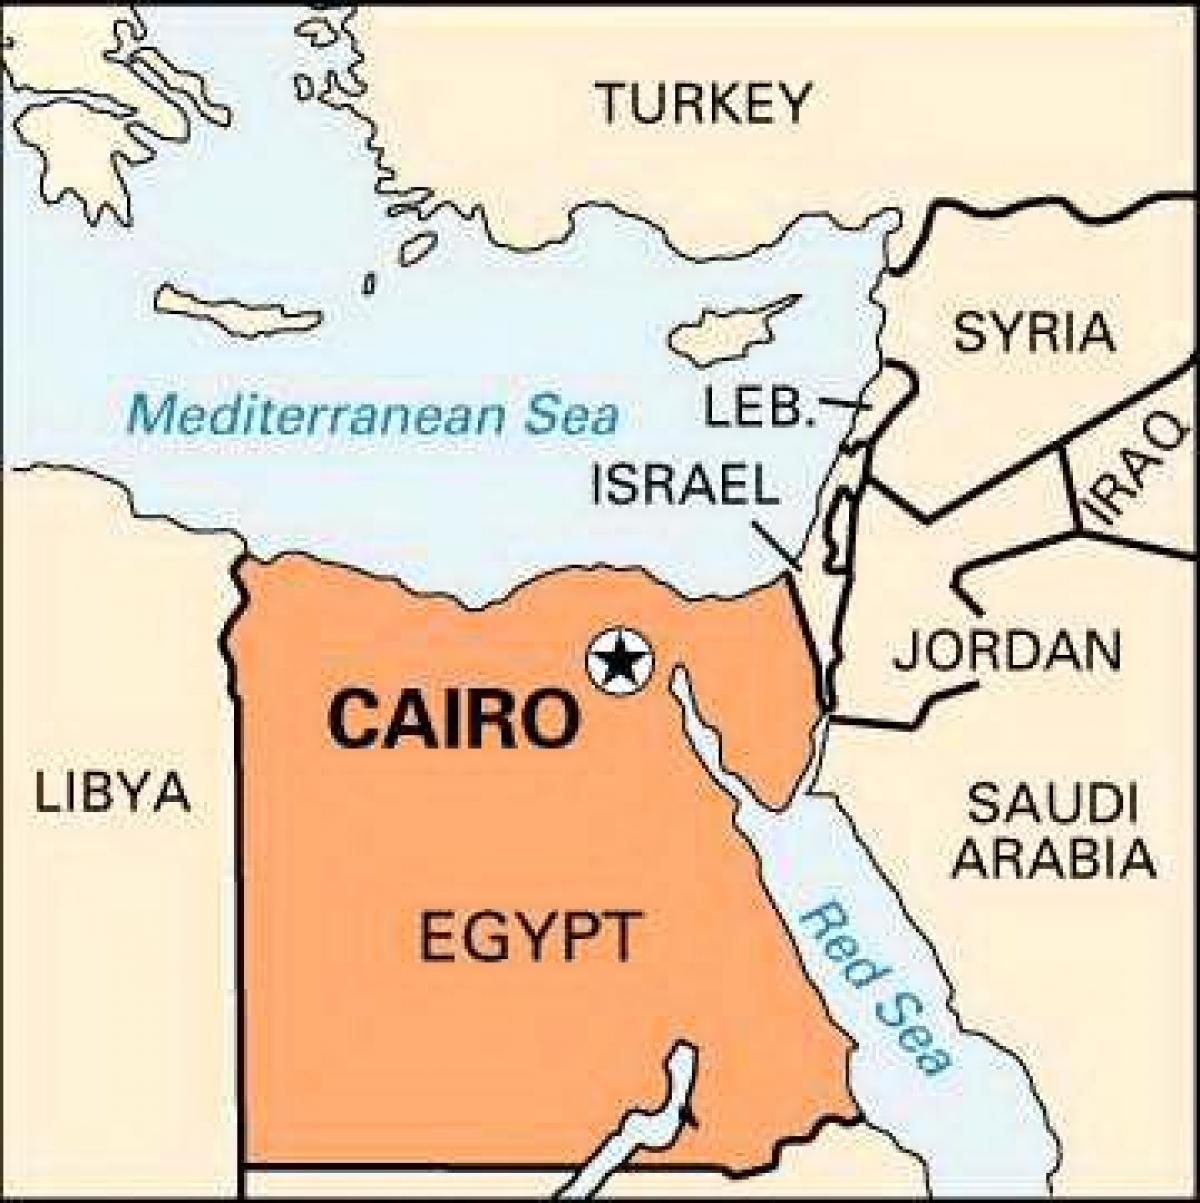 Карта Каира месту